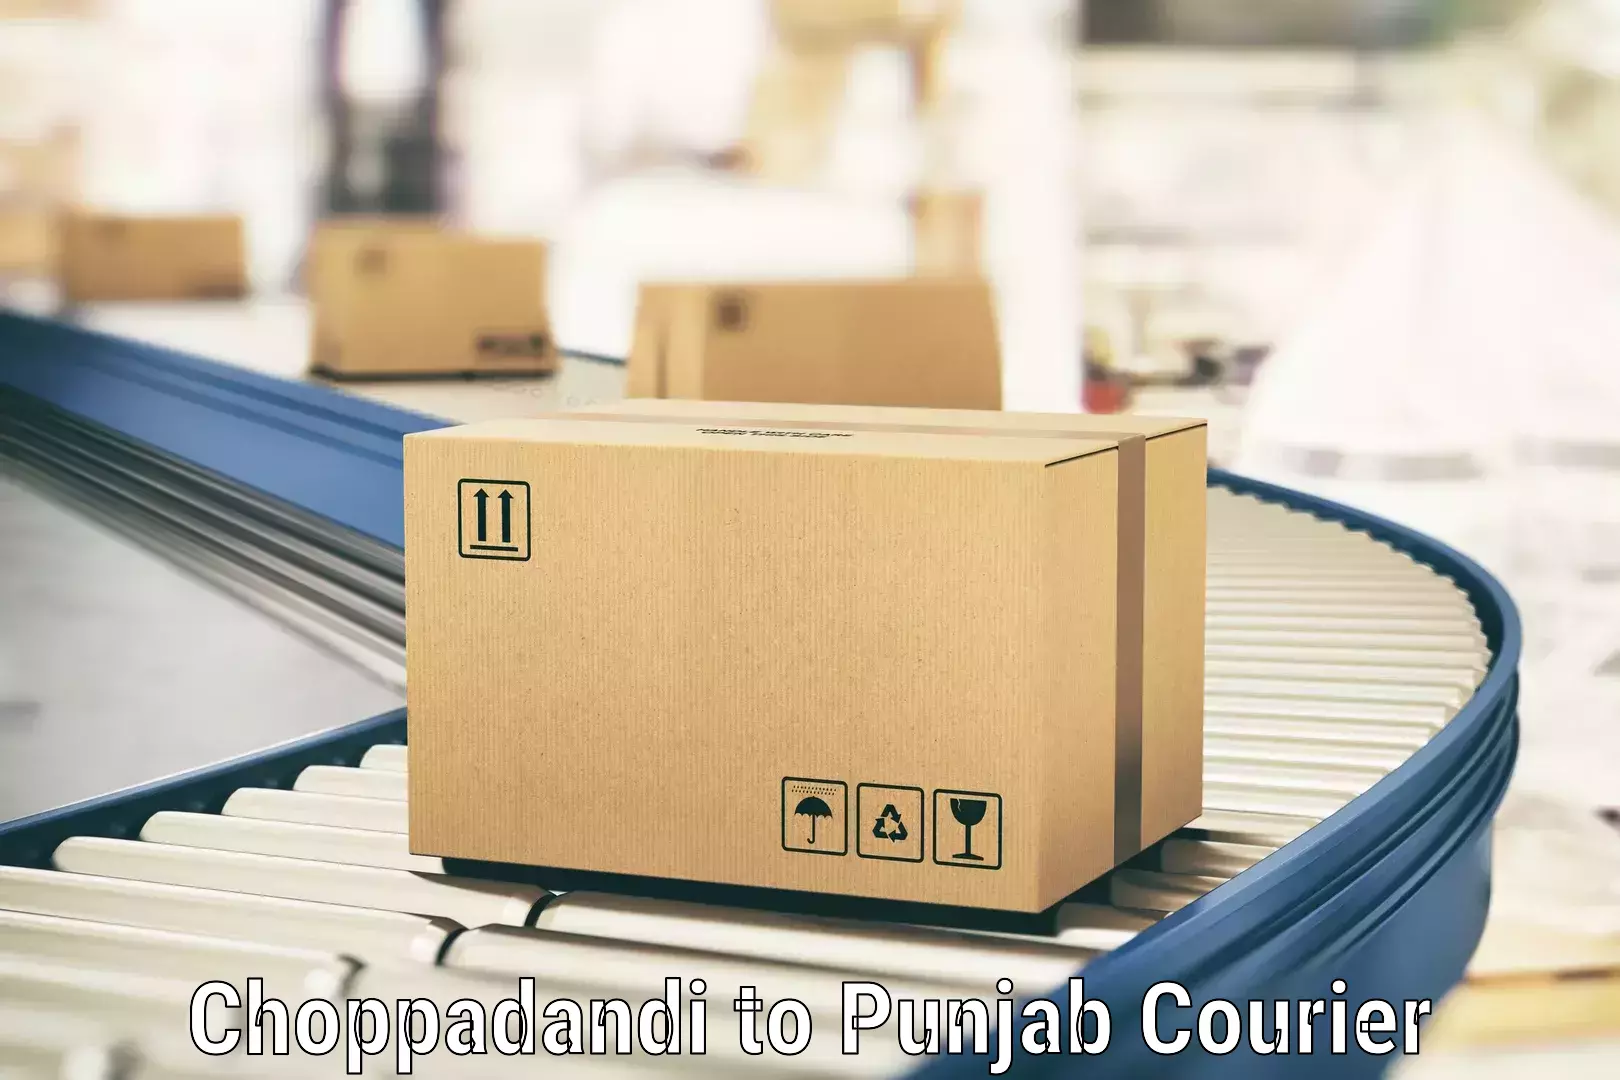 Large package courier Choppadandi to Adampur Jalandhar